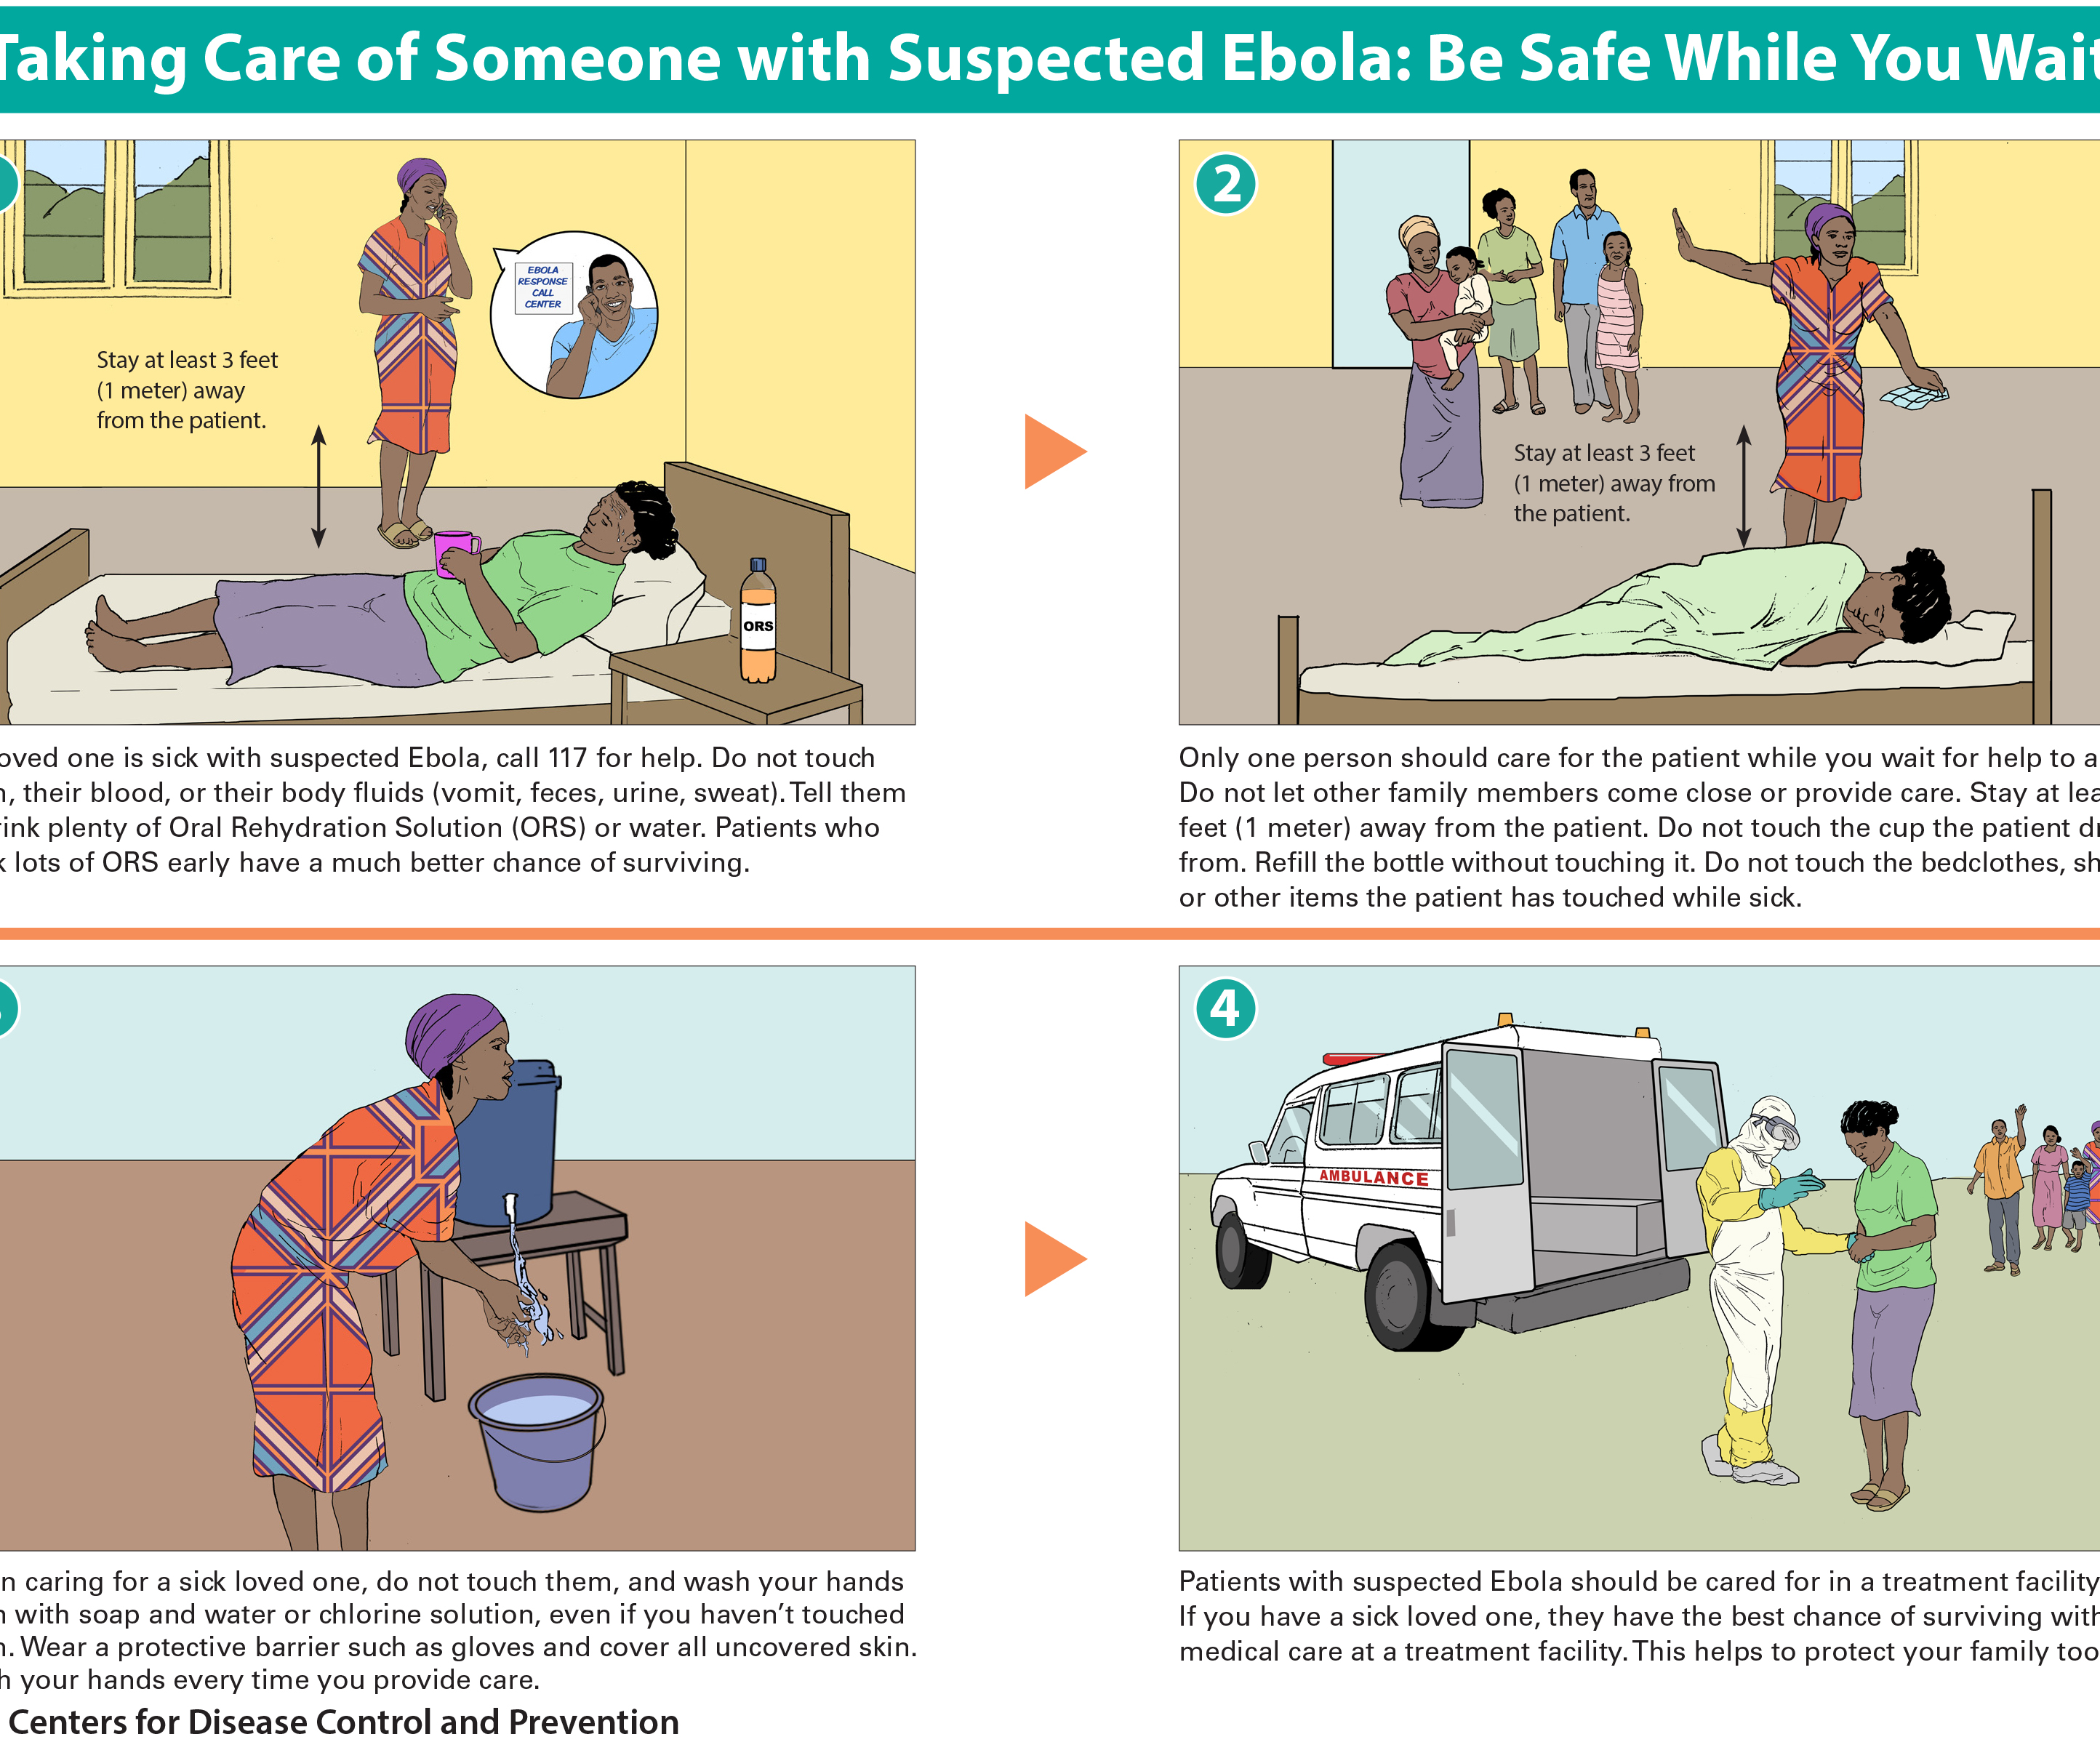 Prendre soin de quelqu'un avec Susceptible Ebola: Be Safe pendant que vous attendez